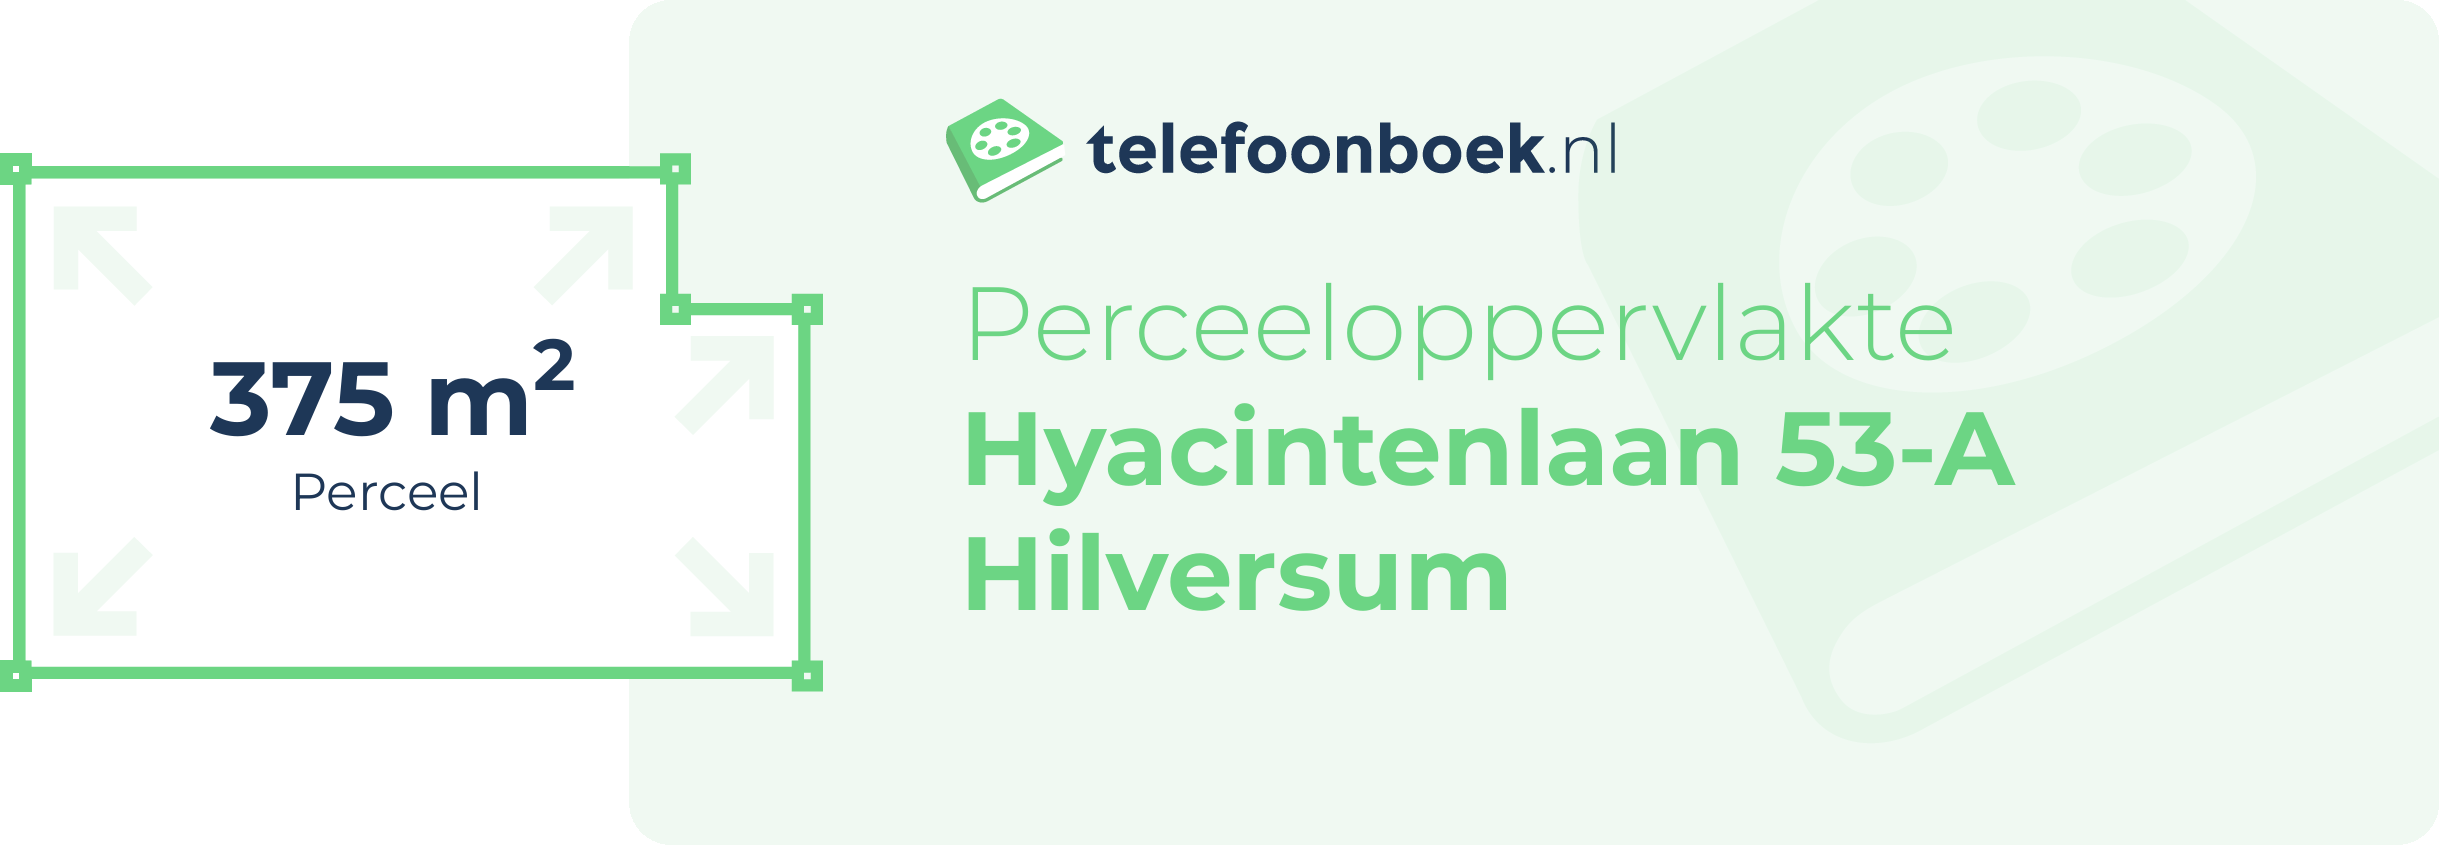 Perceeloppervlakte Hyacintenlaan 53-A Hilversum